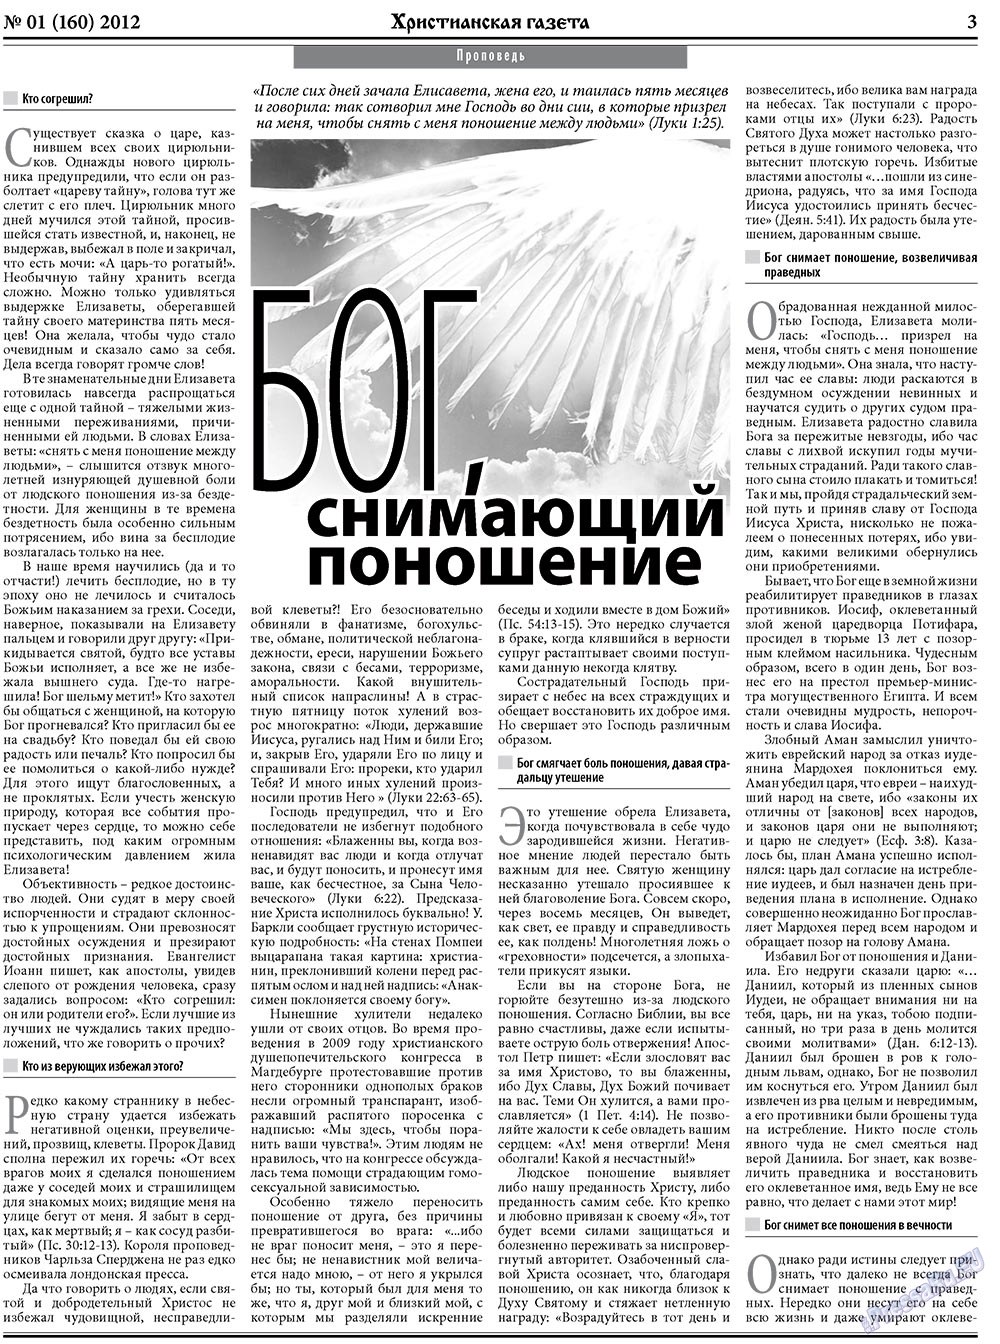 Христианская газета, газета. 2012 №1 стр.3